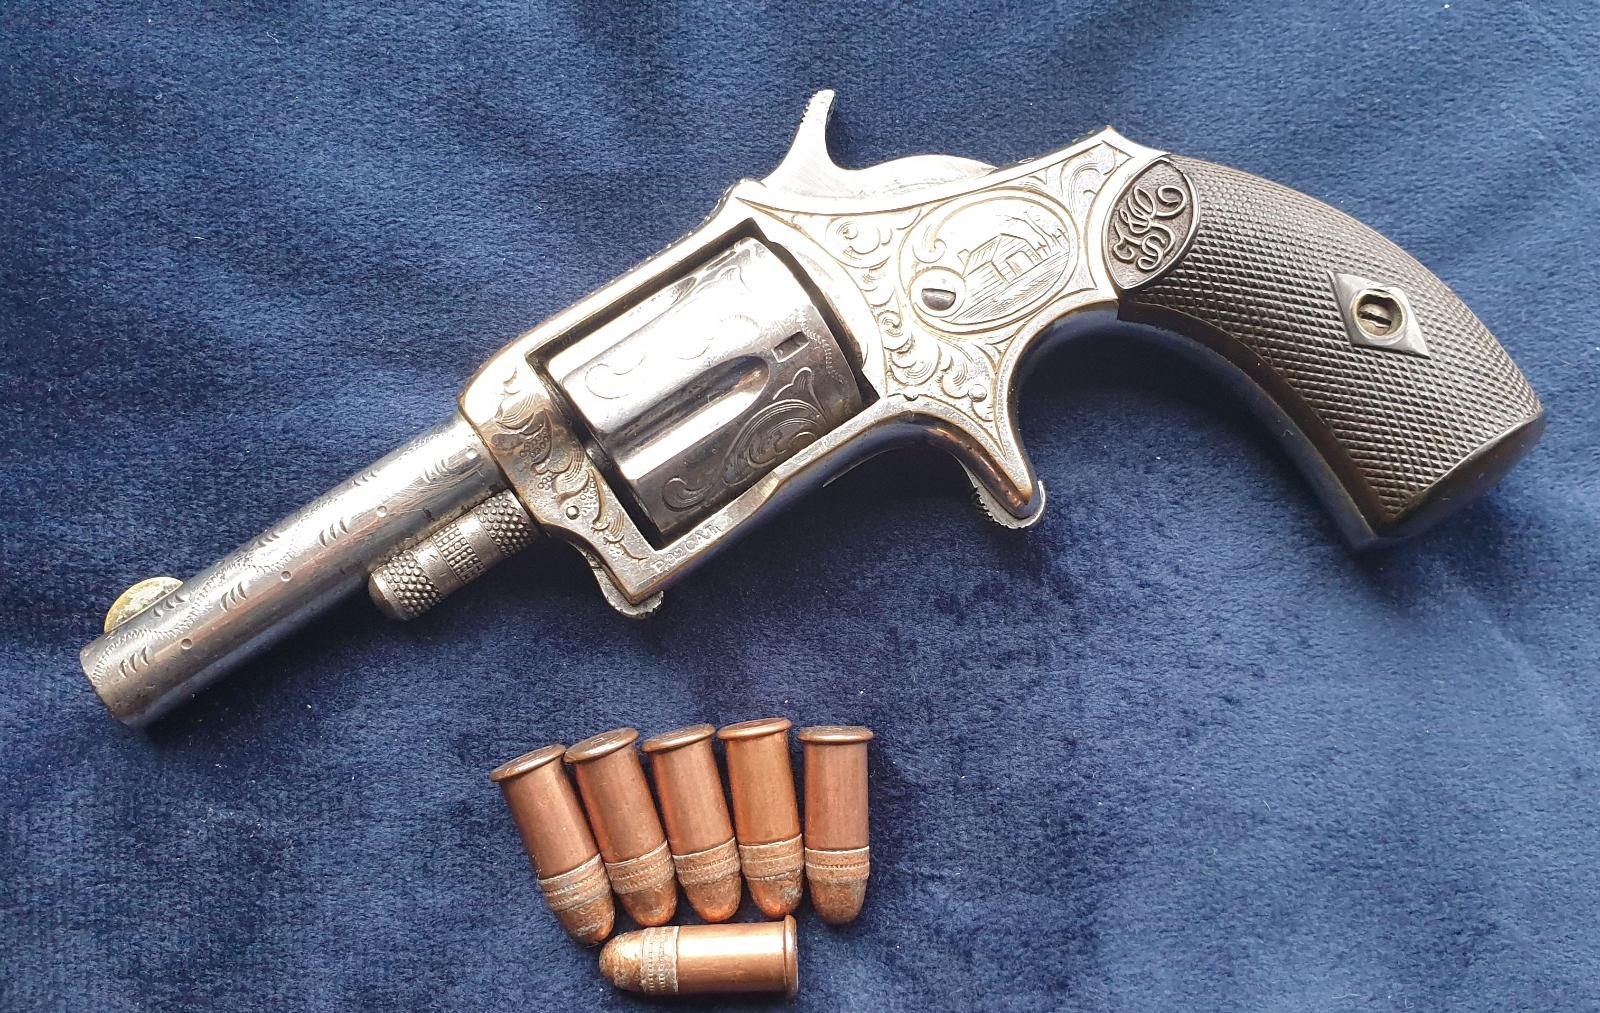 Revolver Pioneer cal.32 Long 1876 ručně rytý Nádherný původní stav - Sběratelské zbraně